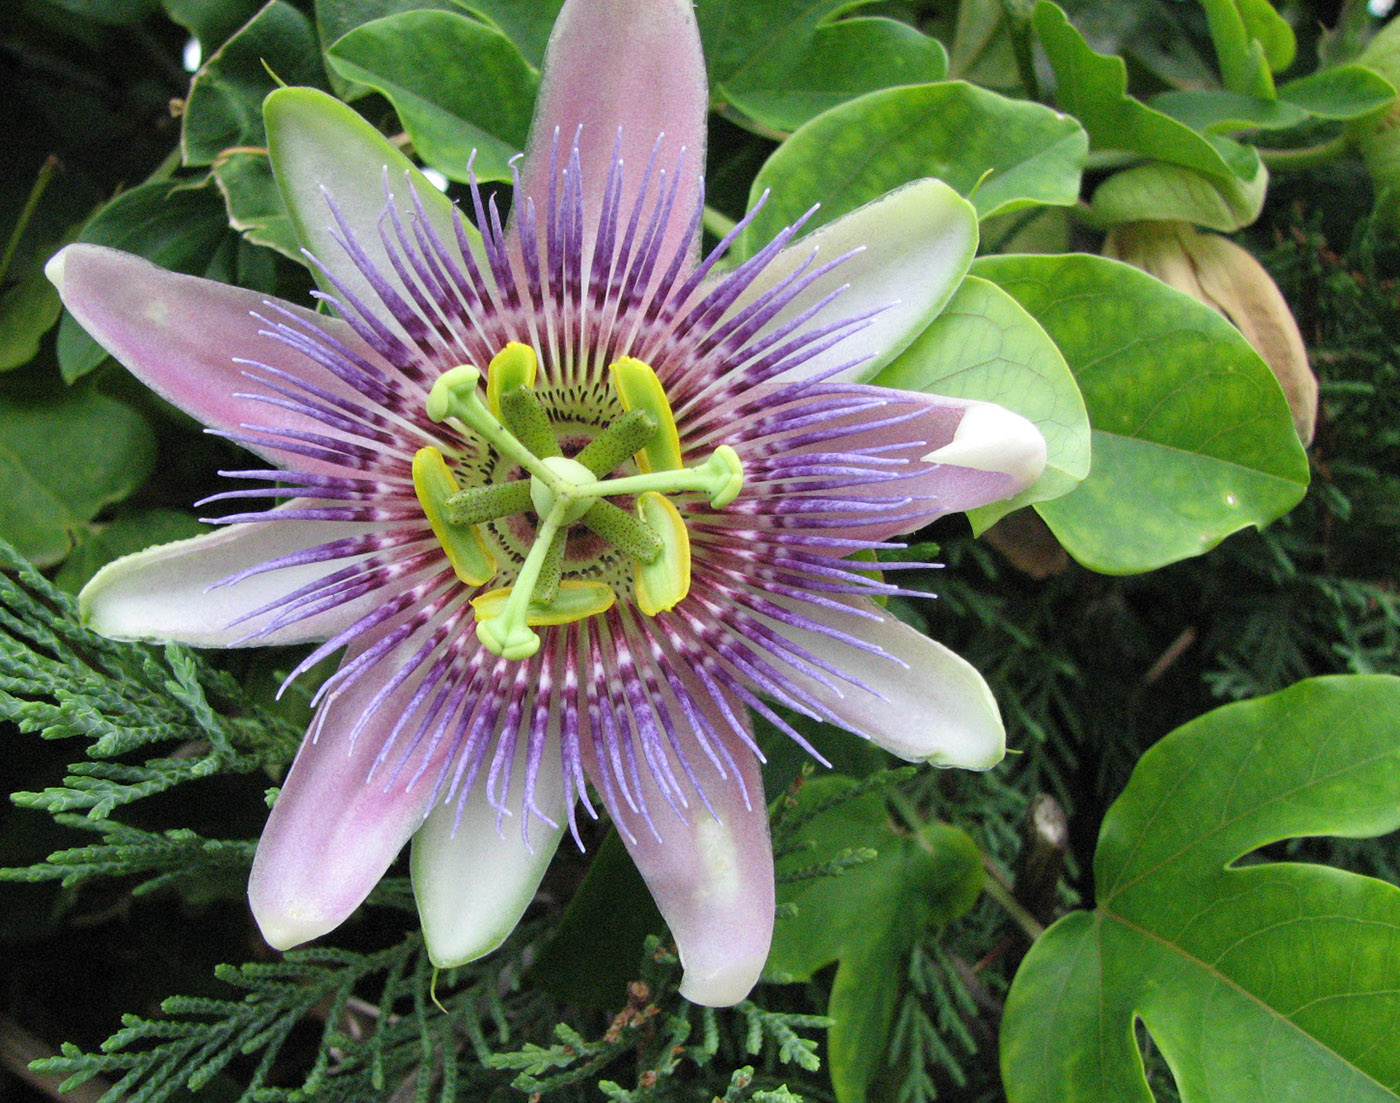 Image of genus Passiflora specimen.